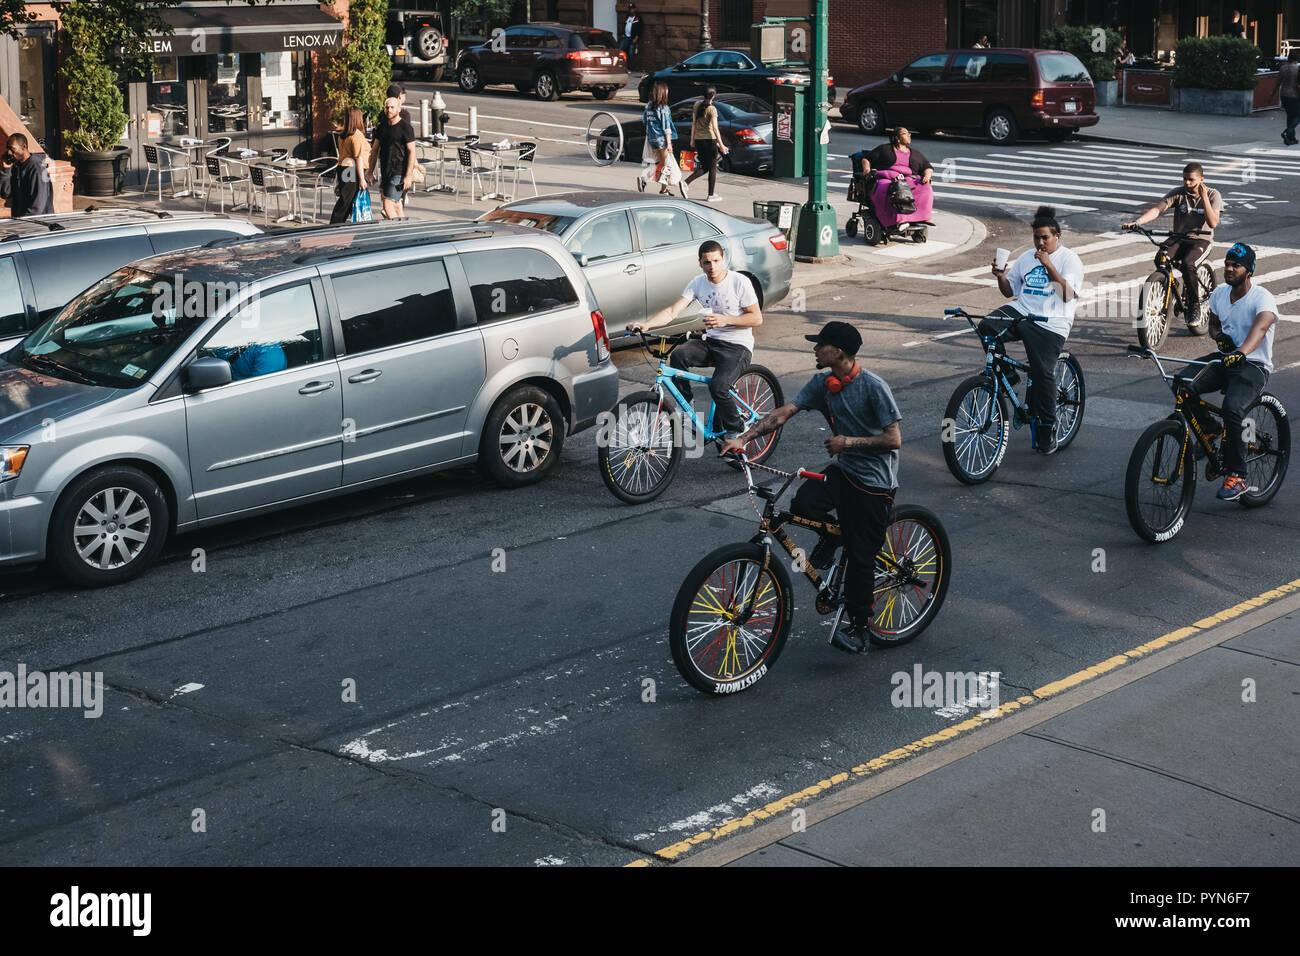 New York, USA - Juni 1, 2018: Jugendliche Fahrrad auf der Straße in Harlem, New York. Seit den 1920er Jahren, Harlem wurde als einer der wichtigsten afrikanischen Americ bekannt Stockfoto